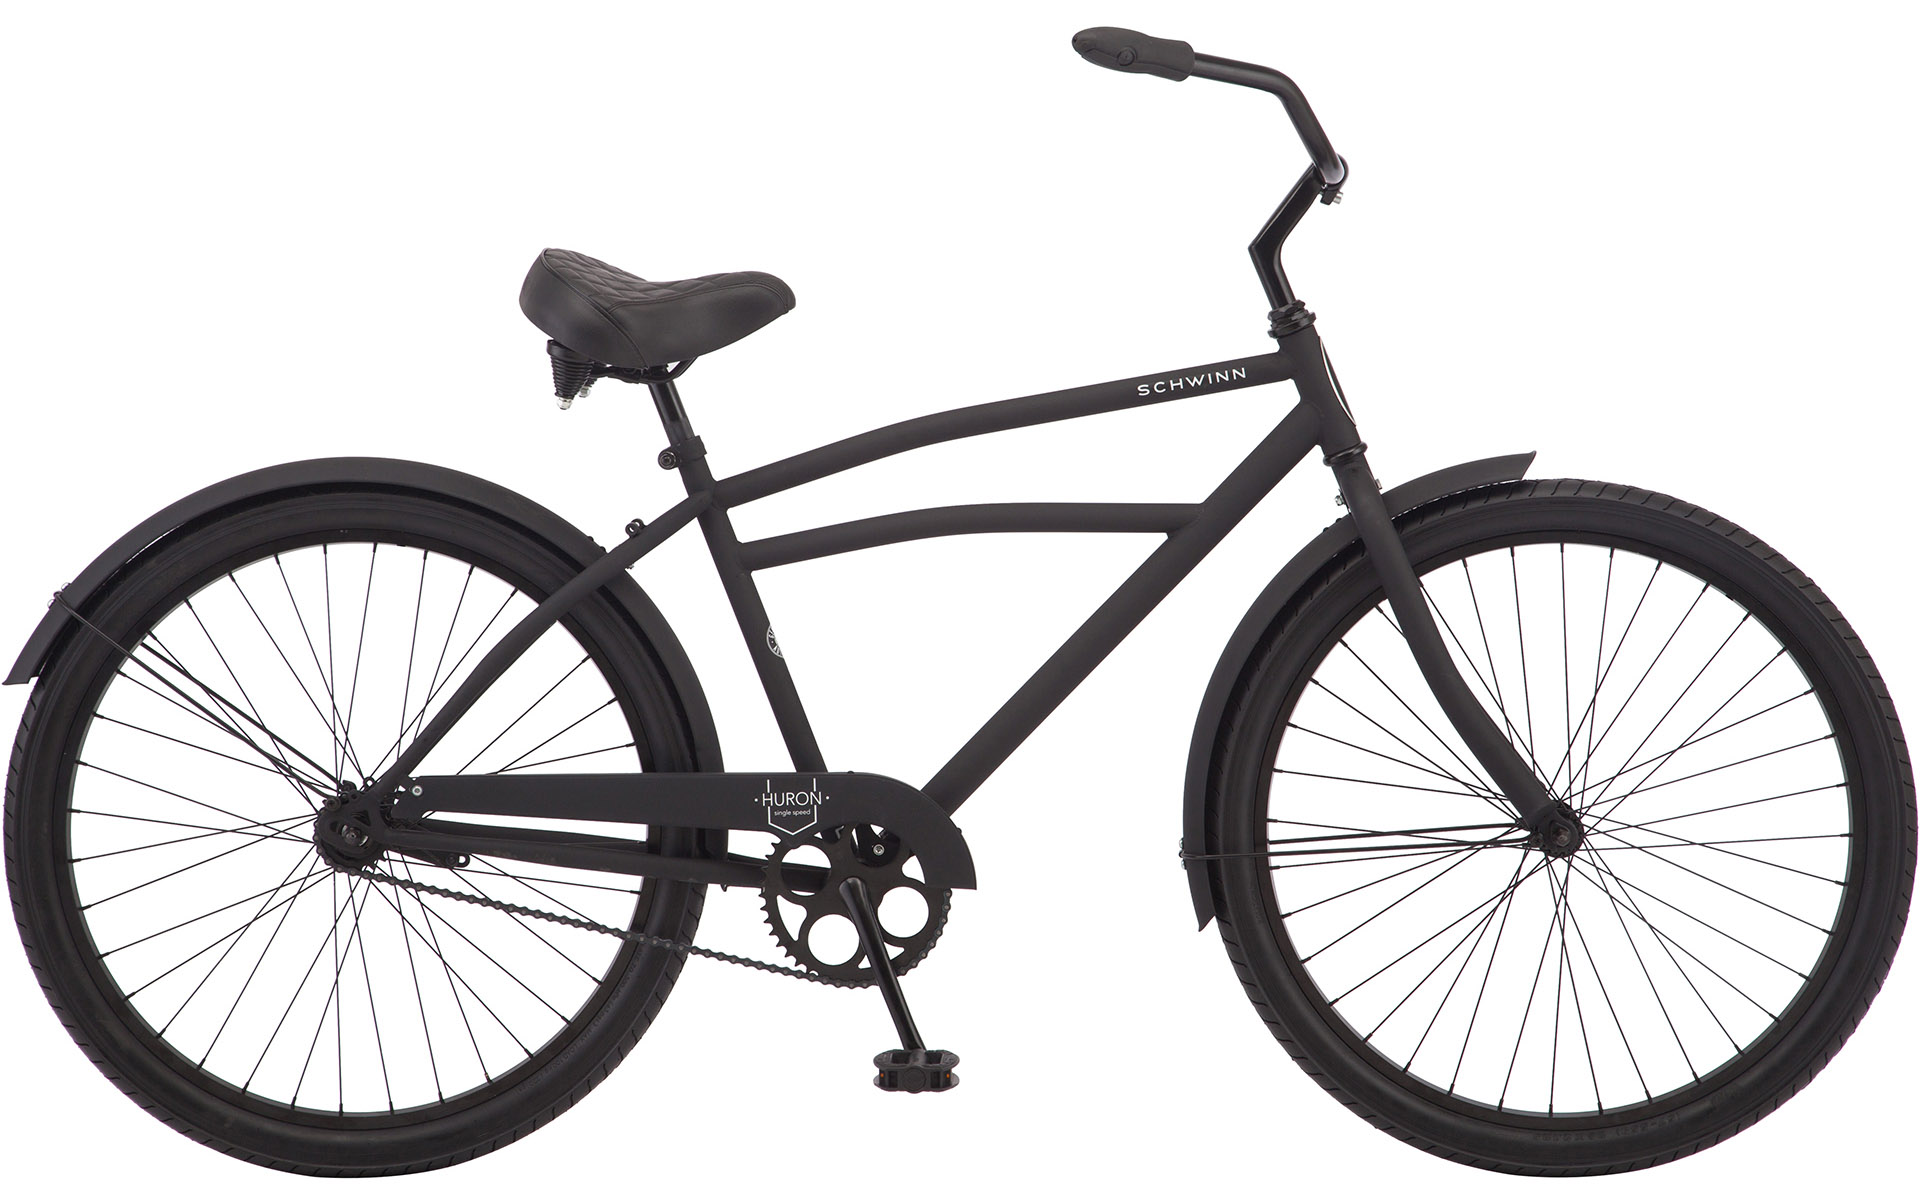  Отзывы о Городском велосипеде Schwinn Huron 1 (2021) 2021